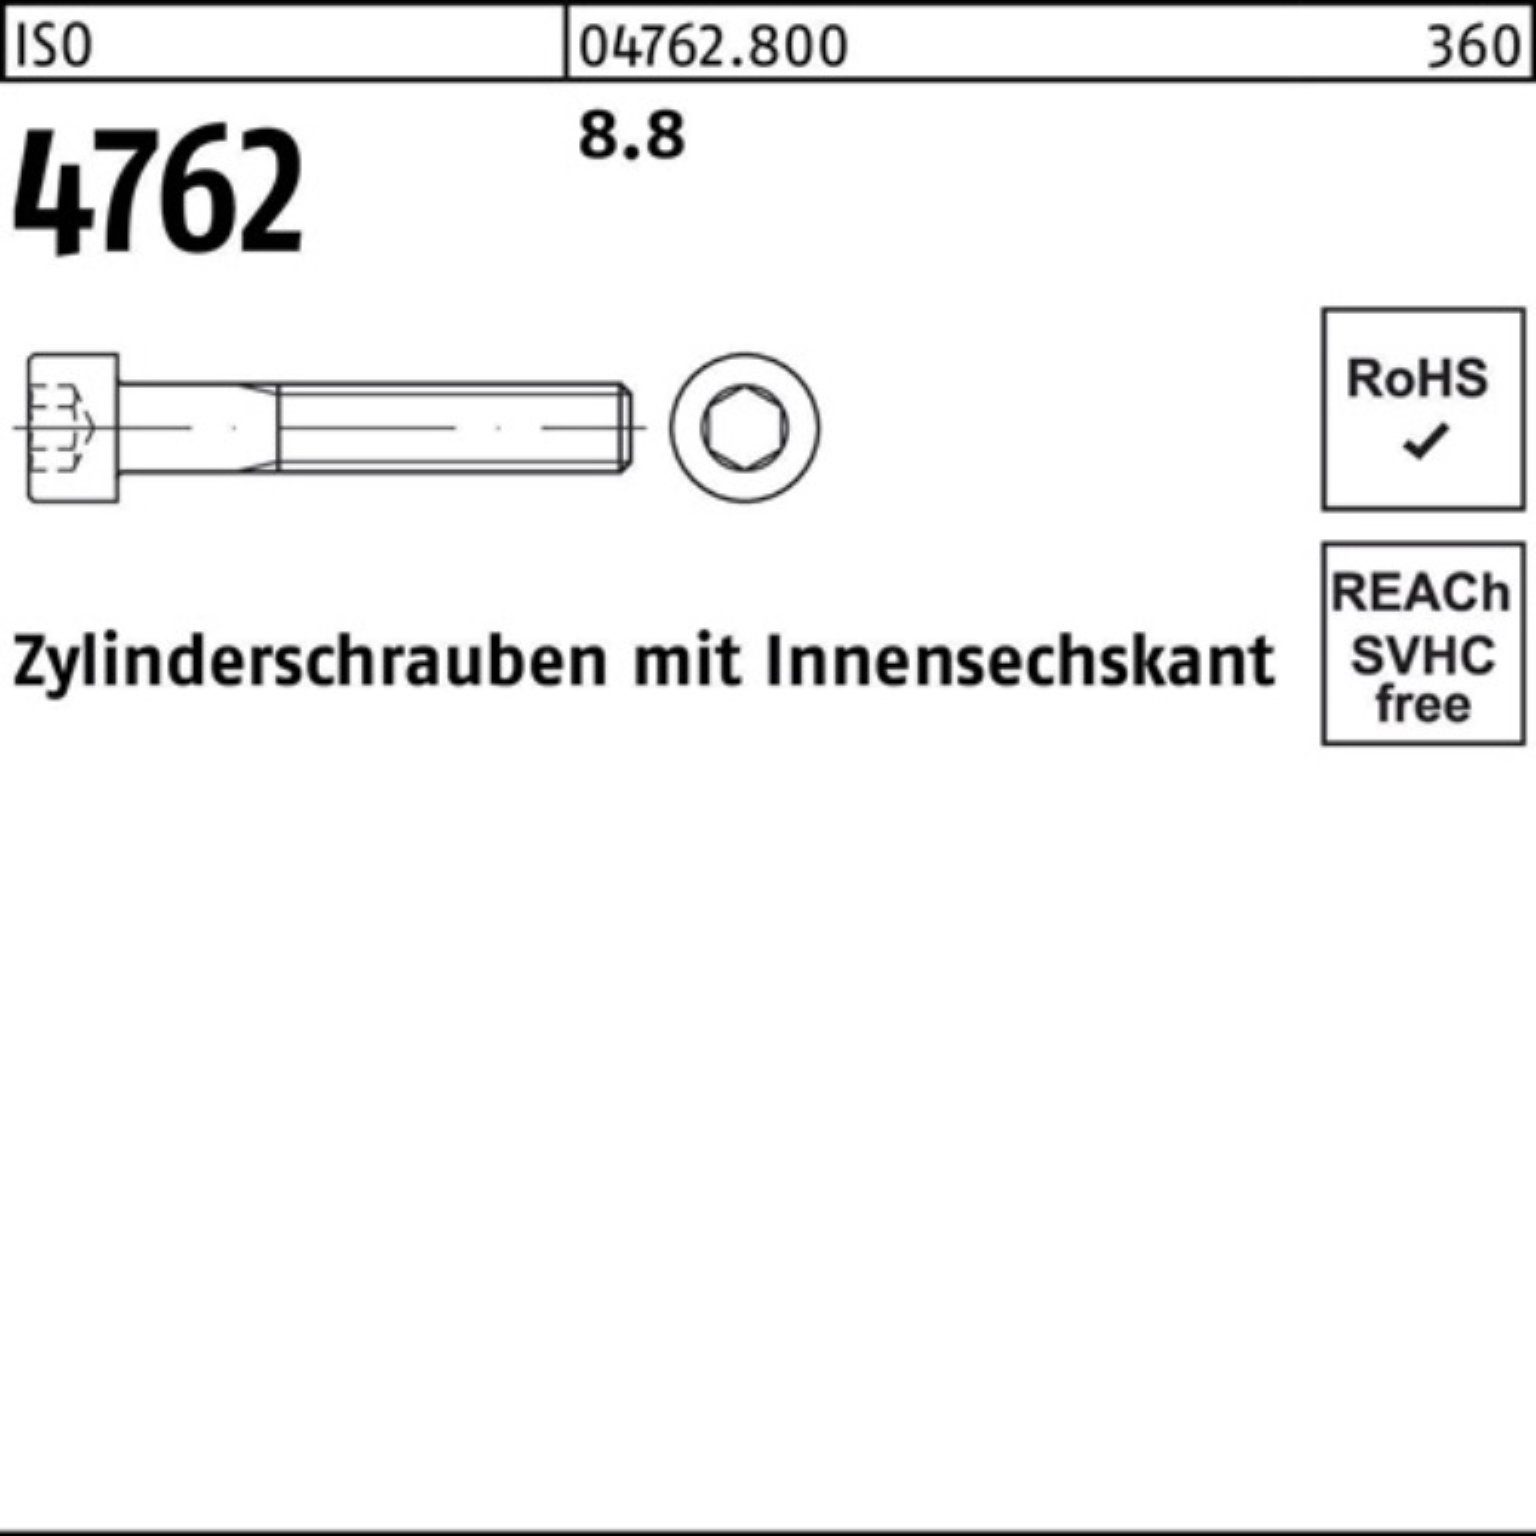 Reyher Zylinderschraube 100er 4762 1 M30x Innen-6kt ISO 8.8 320 Zylinderschraube Stück I Pack